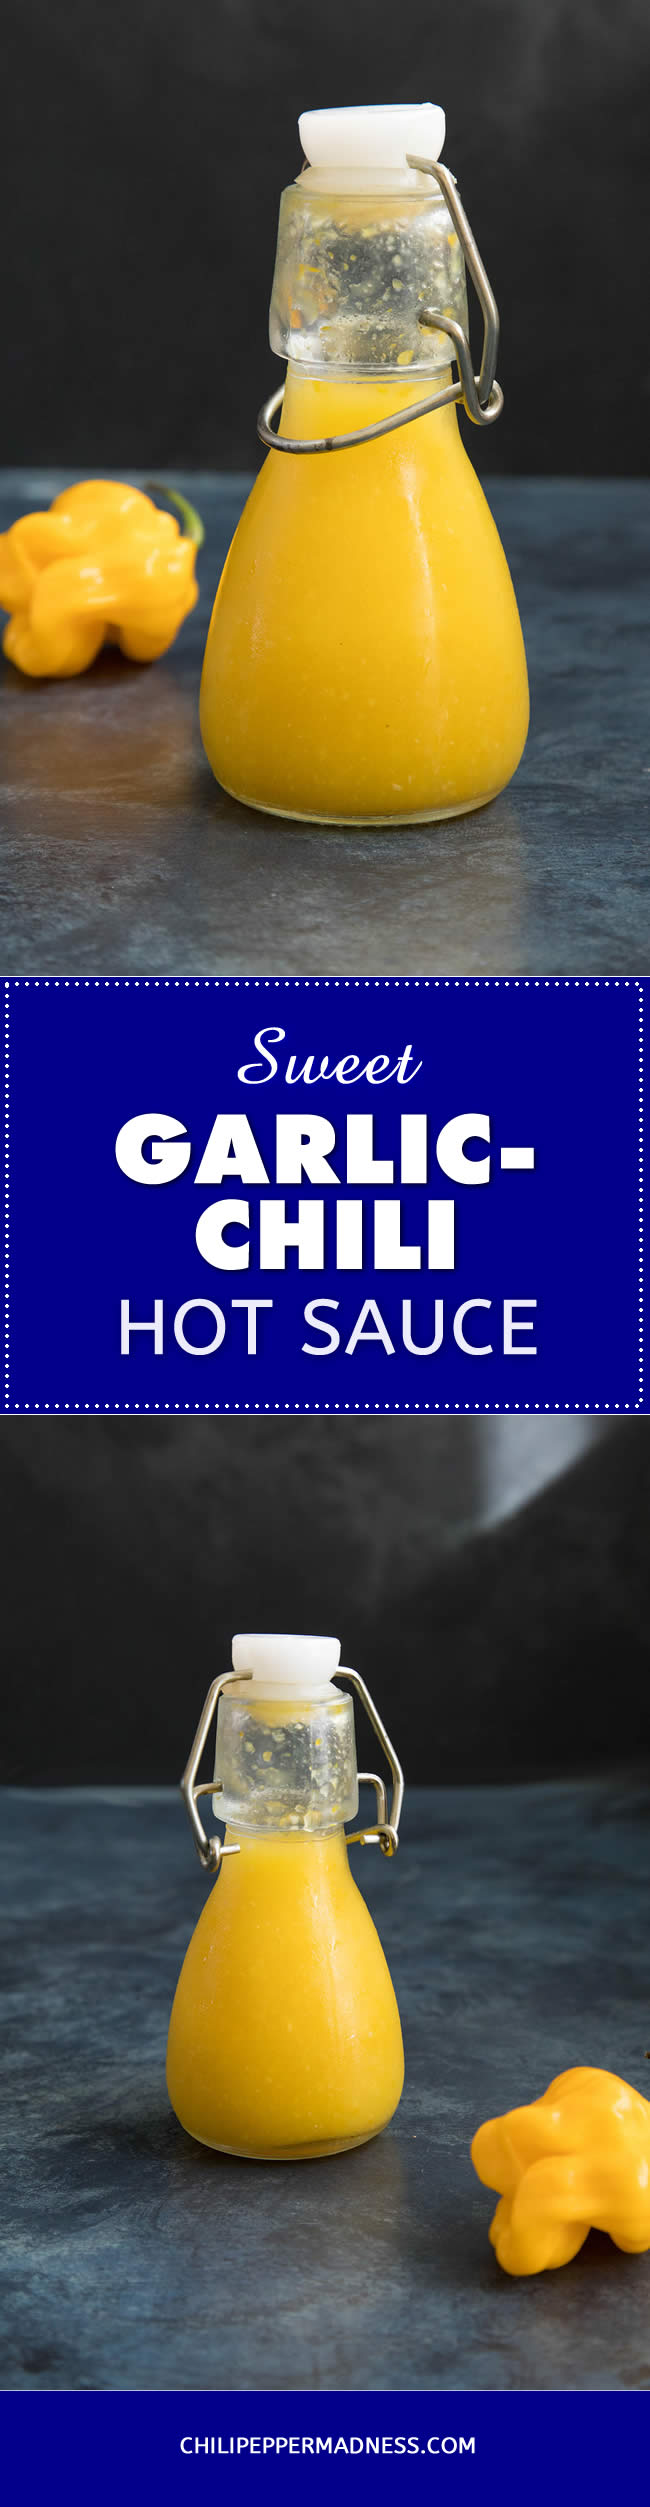 Sweet Garlic-Chili Hot Sauce - Recipe